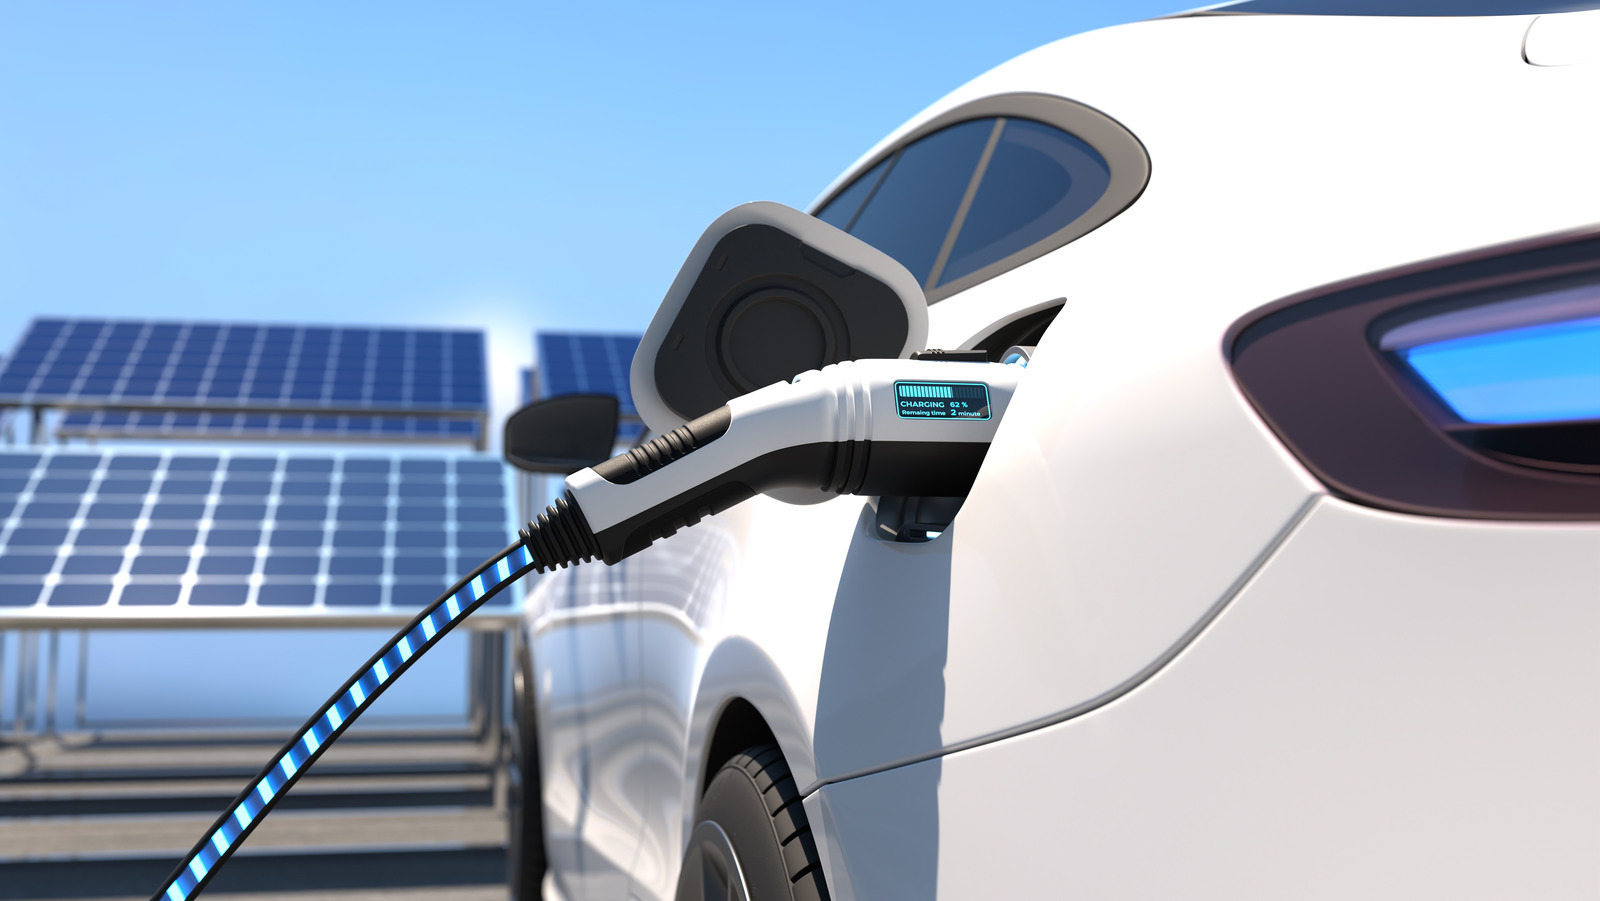 ¿Pueden los paneles solares cargar un coche eléctrico?  Requisitos de carga de vehículos eléctricos explicados